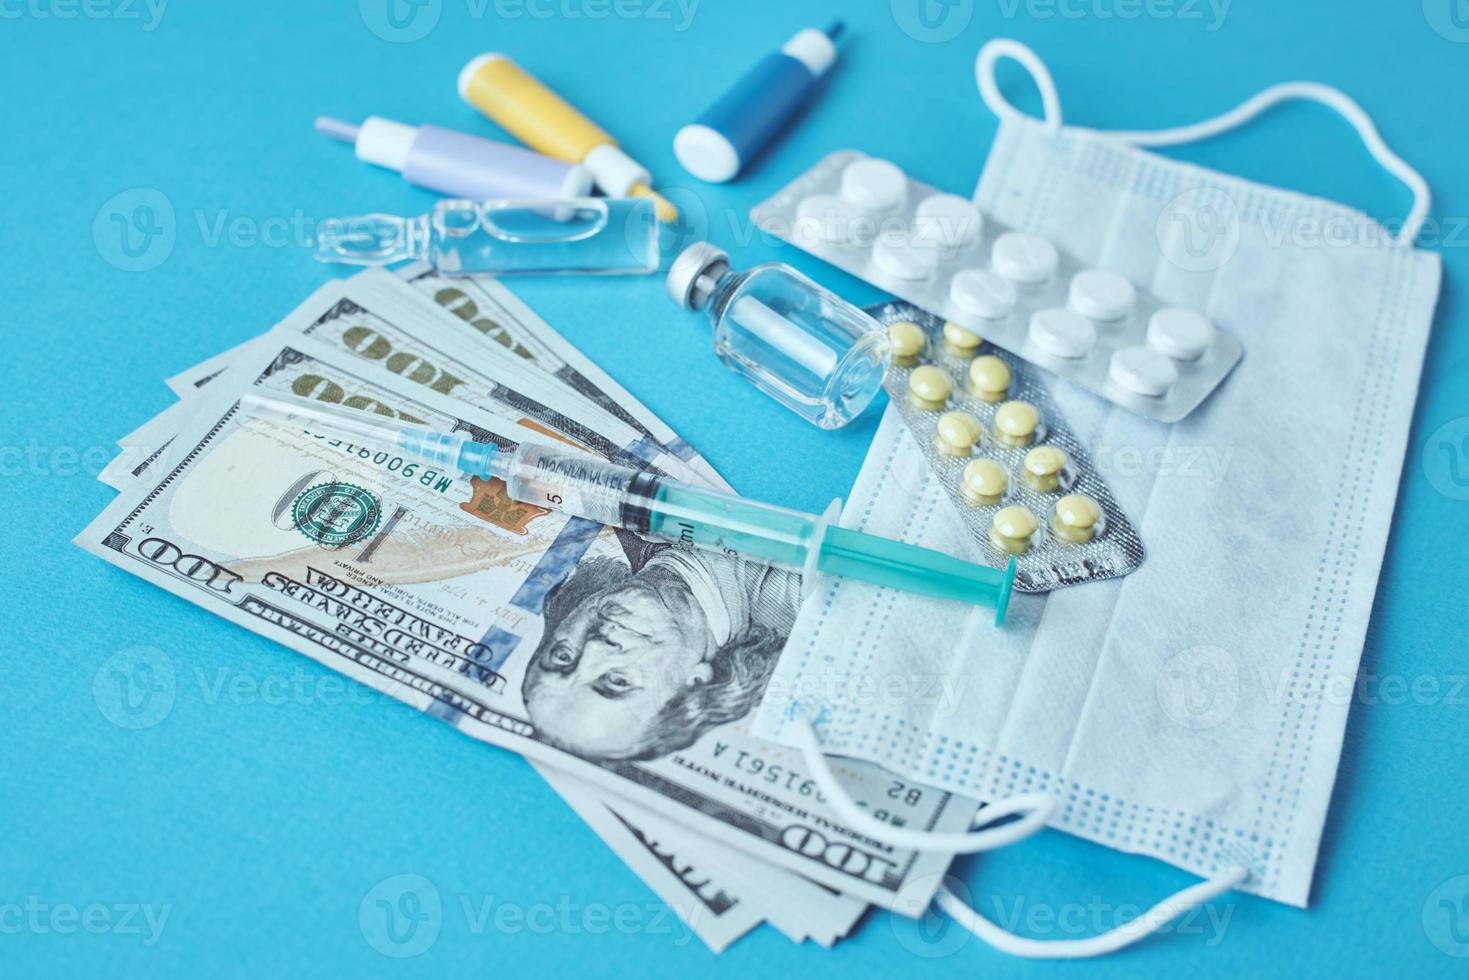 pastillas, máscara protectora, artículos médicos y billetes de dólar en el fondo azul foto